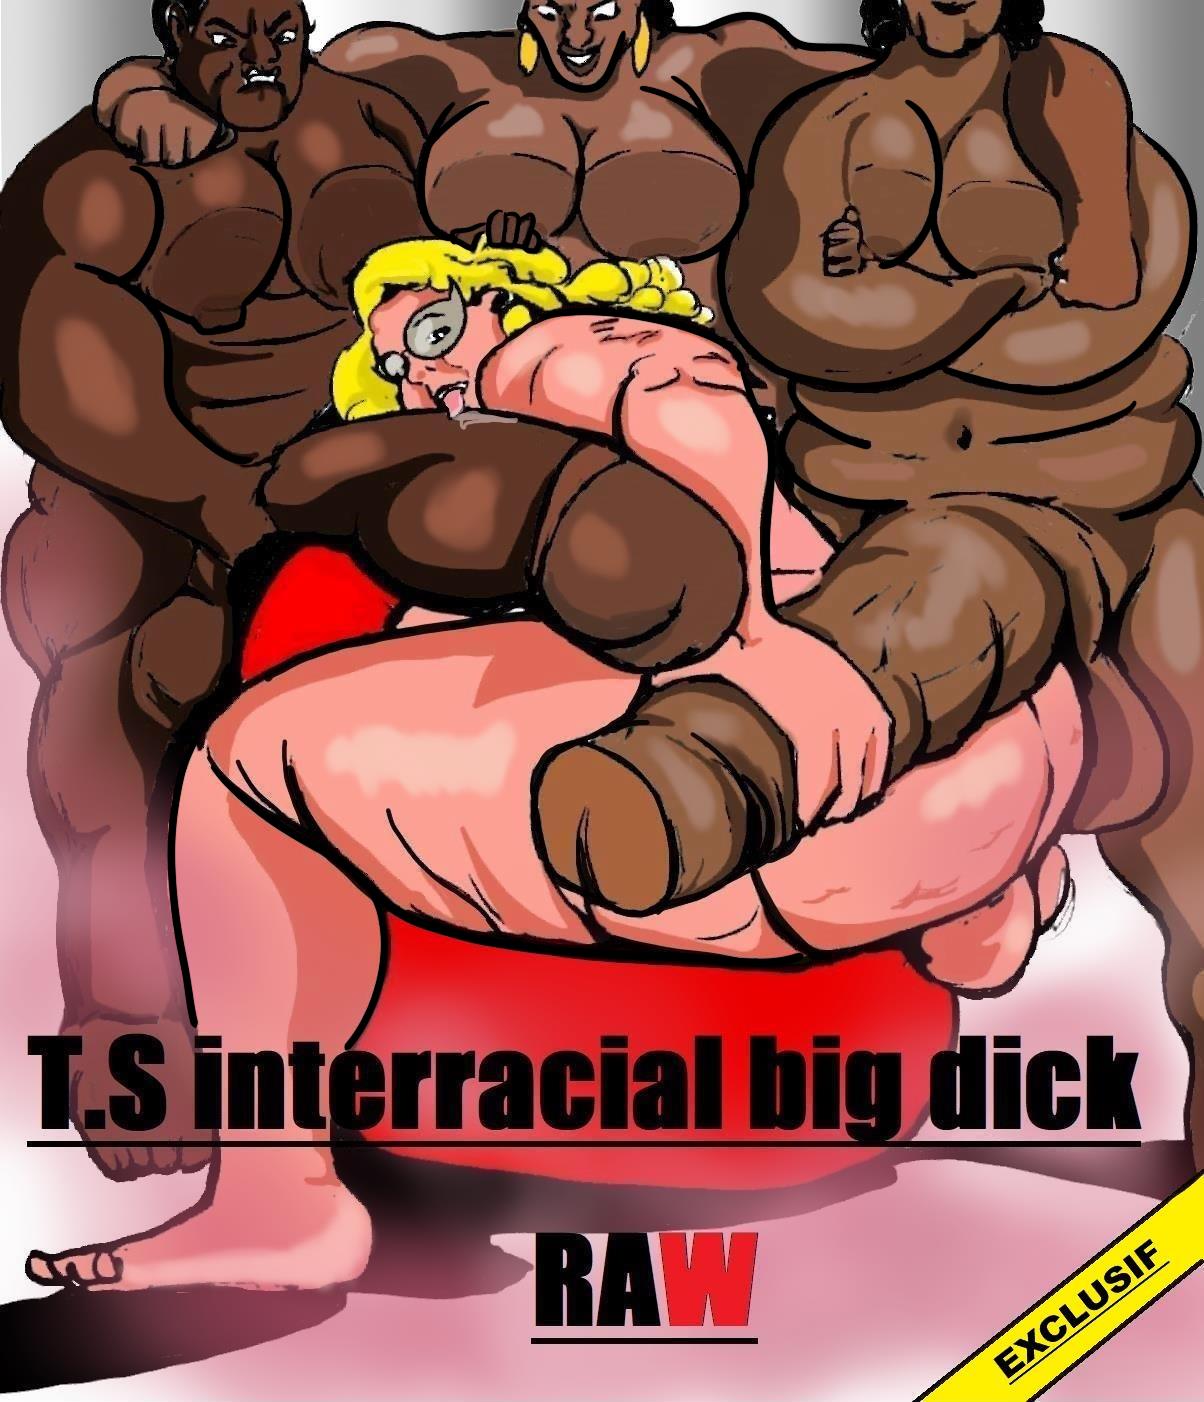 Cartoon Shemale With Big Dick - Shemale Interracial Big Dick Raw- Carter Tyron - Porn Cartoon Comics